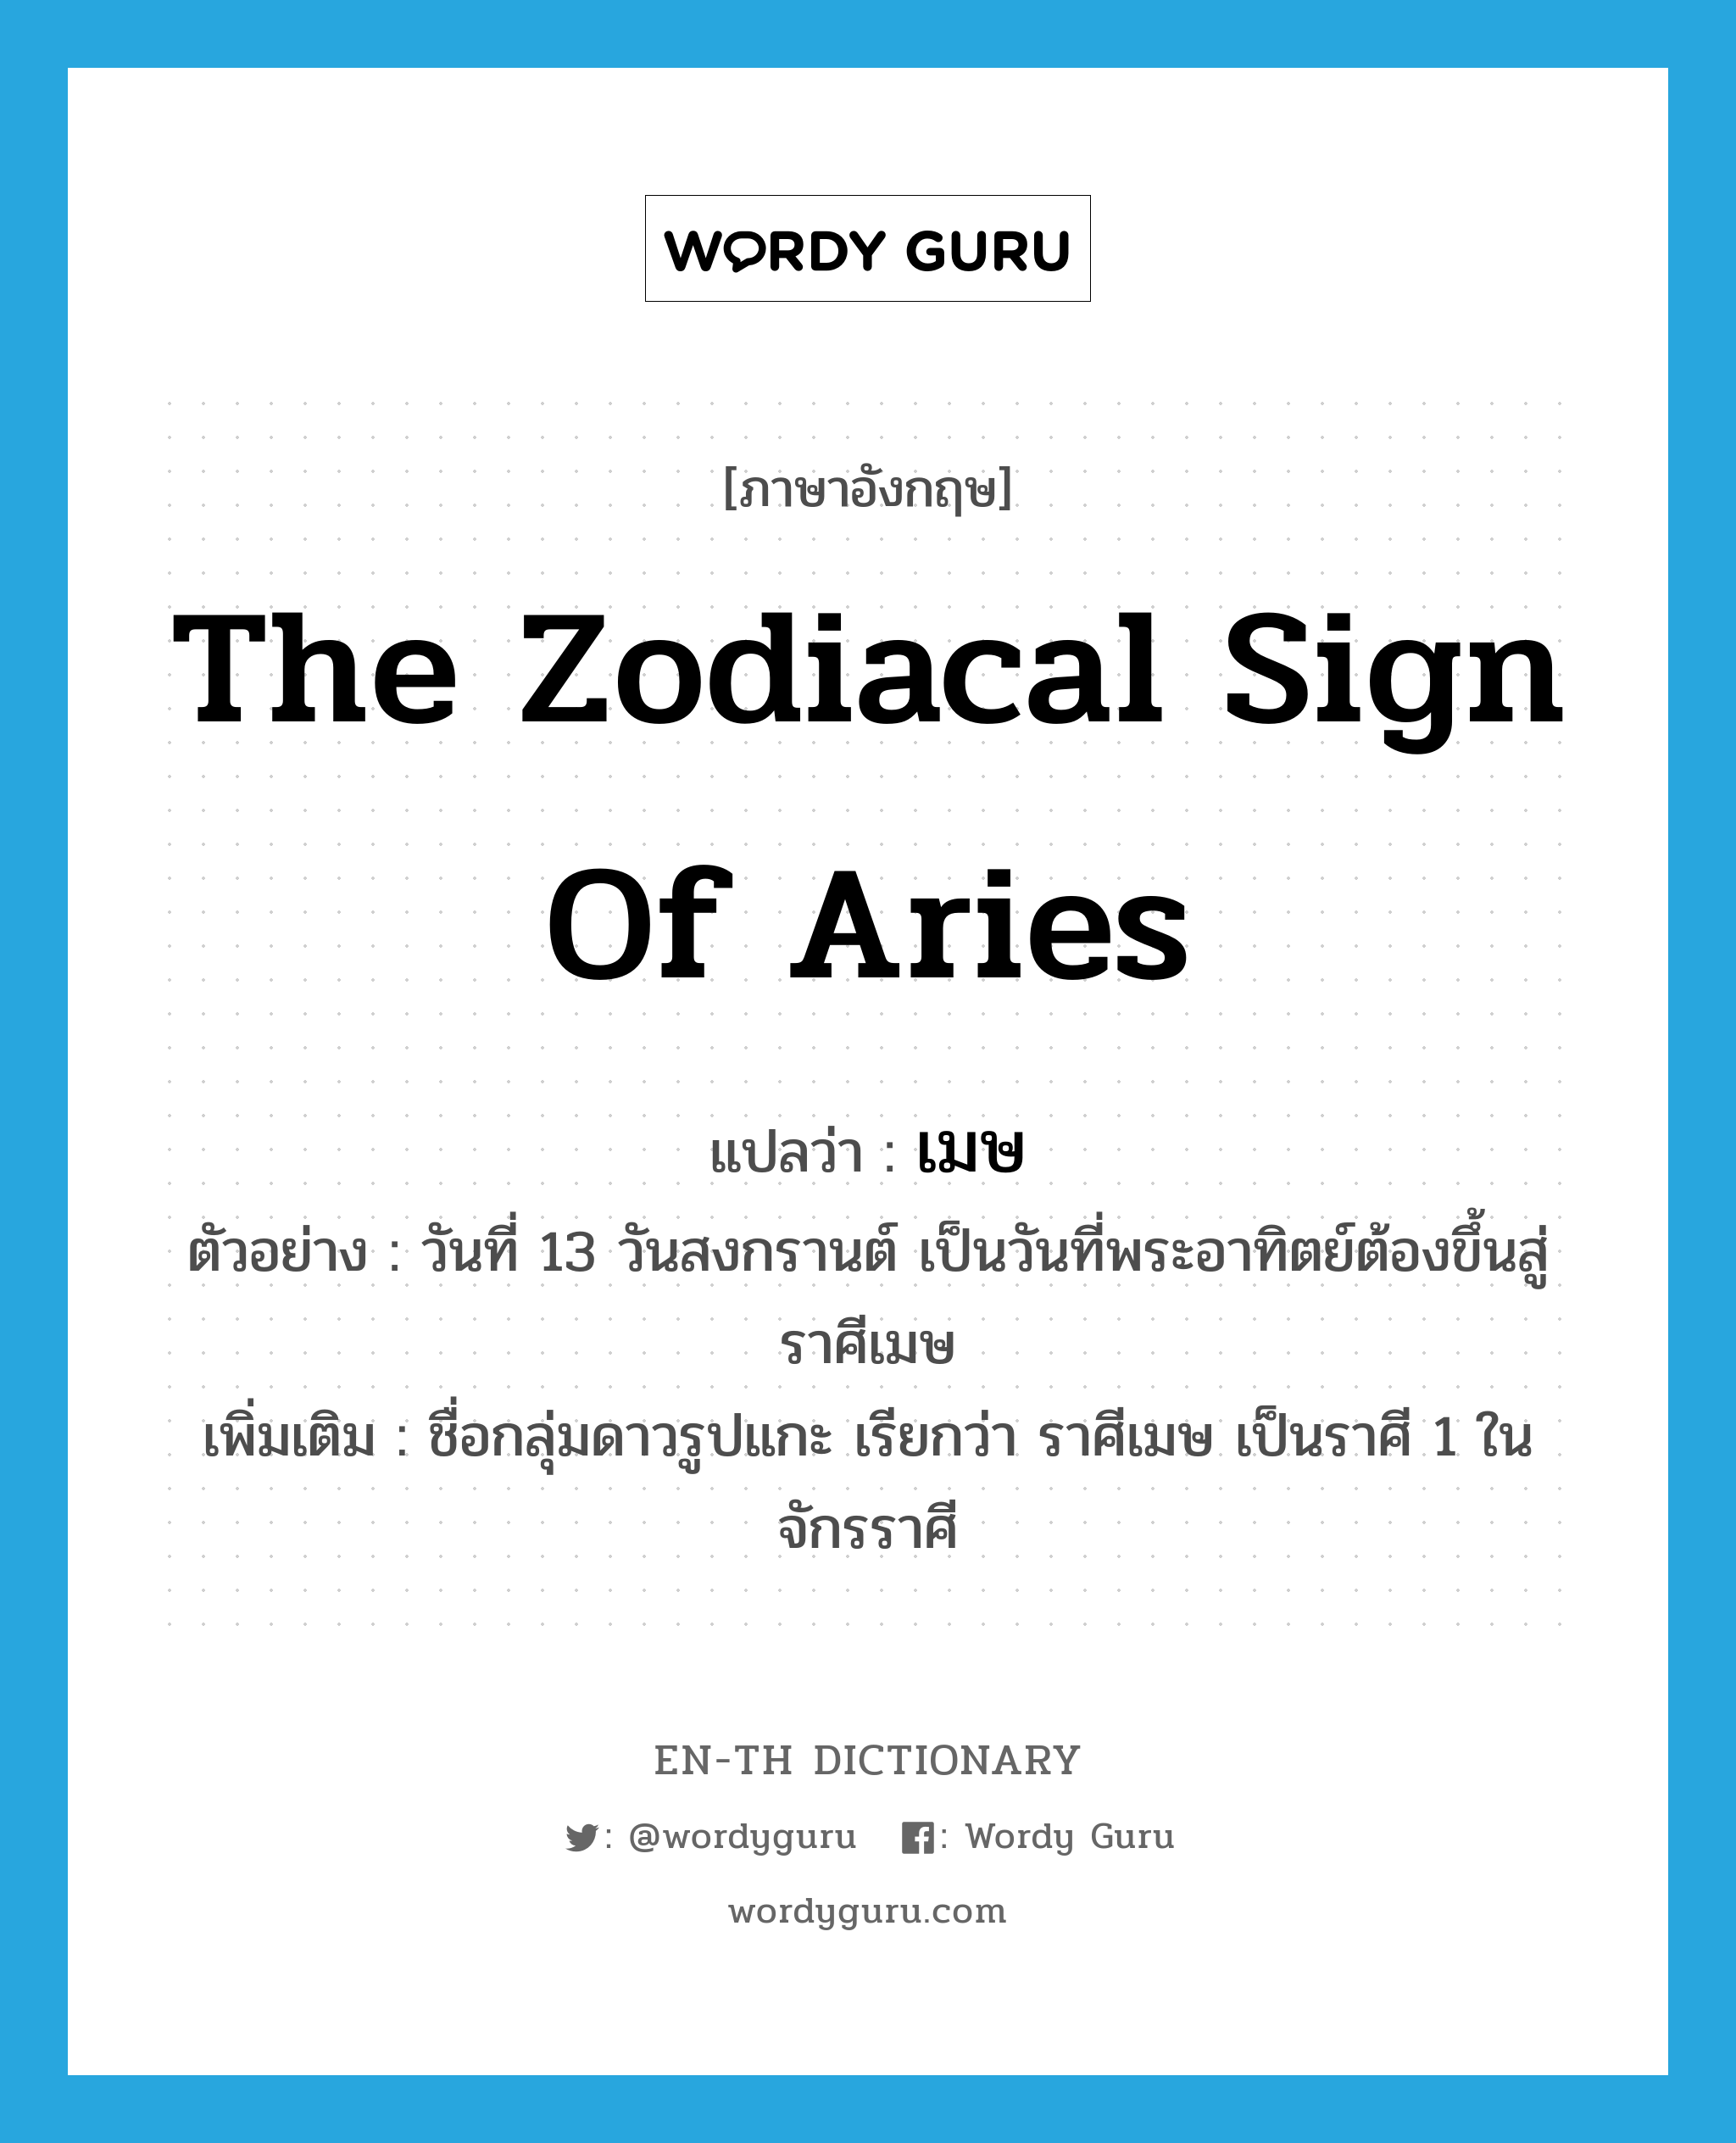 เมษ ภาษาอังกฤษ?, คำศัพท์ภาษาอังกฤษ เมษ แปลว่า the zodiacal sign of Aries ประเภท N ตัวอย่าง วันที่ 13 วันสงกรานต์ เป็นวันที่พระอาทิตย์ต้องขึ้นสู่ราศีเมษ เพิ่มเติม ชื่อกลุ่มดาวรูปแกะ เรียกว่า ราศีเมษ เป็นราศี 1 ในจักรราศี หมวด N